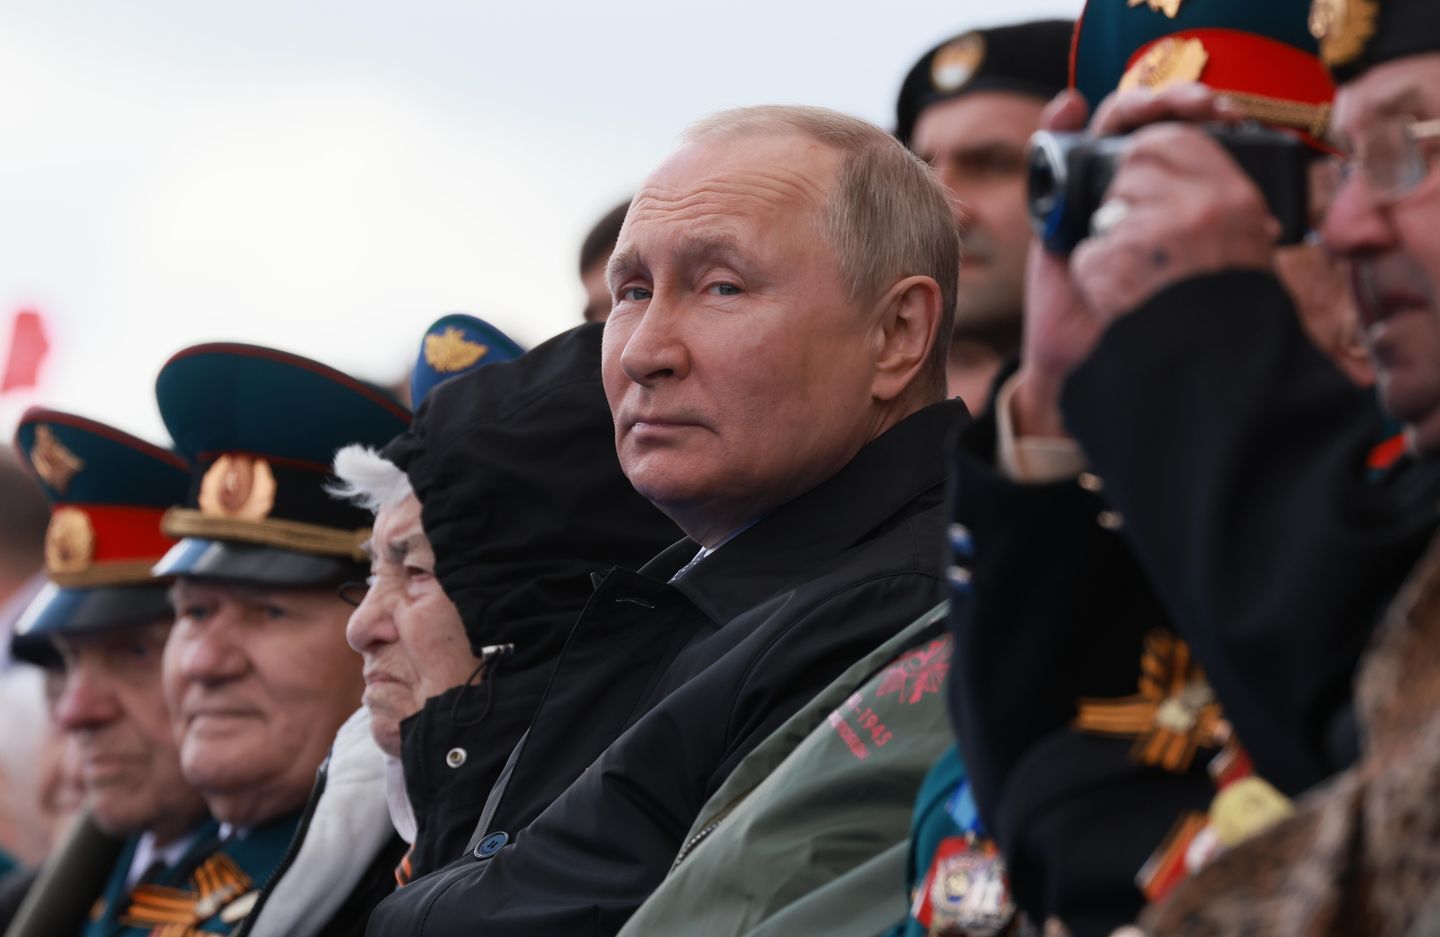 Tehdit Durumu: Putin'in mahvolması olabilecek acımasız iç siyasi dinamiklerin içinde